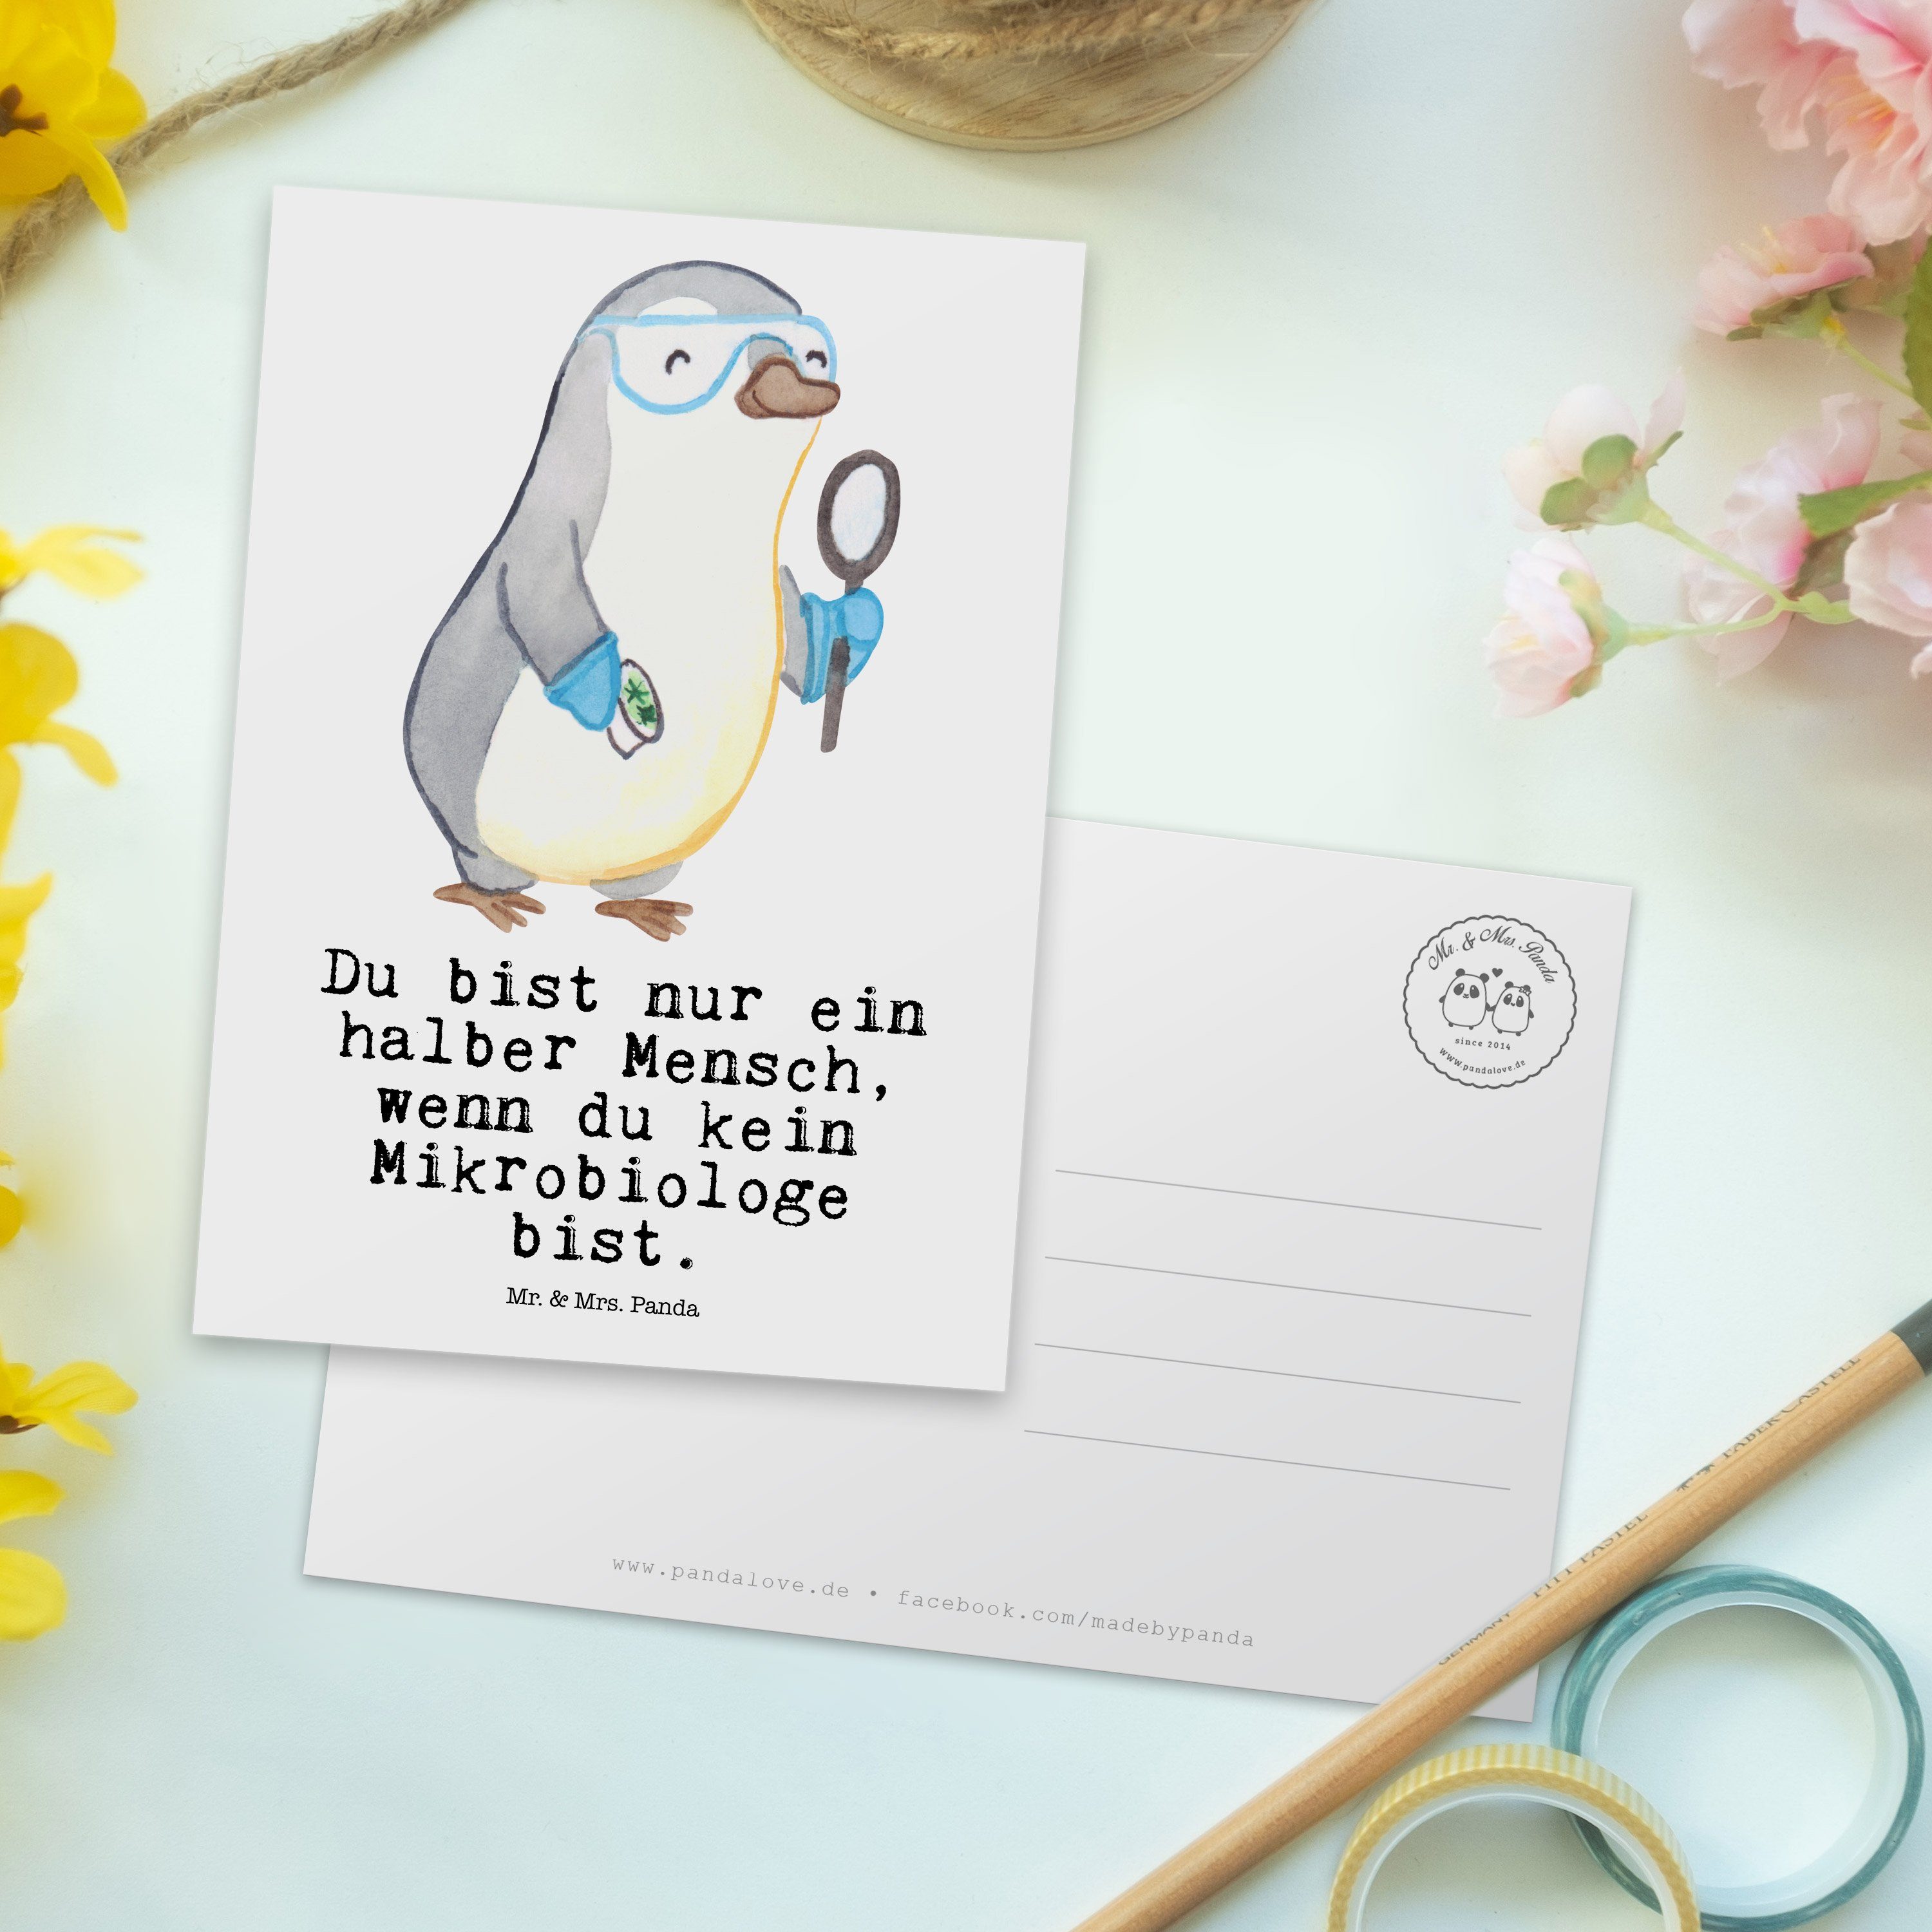 Mr. & Mrs. Panda mit Geschenk, Weiß Herz Labor, Arbeitskol Mikrobiologe Grußkarte, - - Postkarte